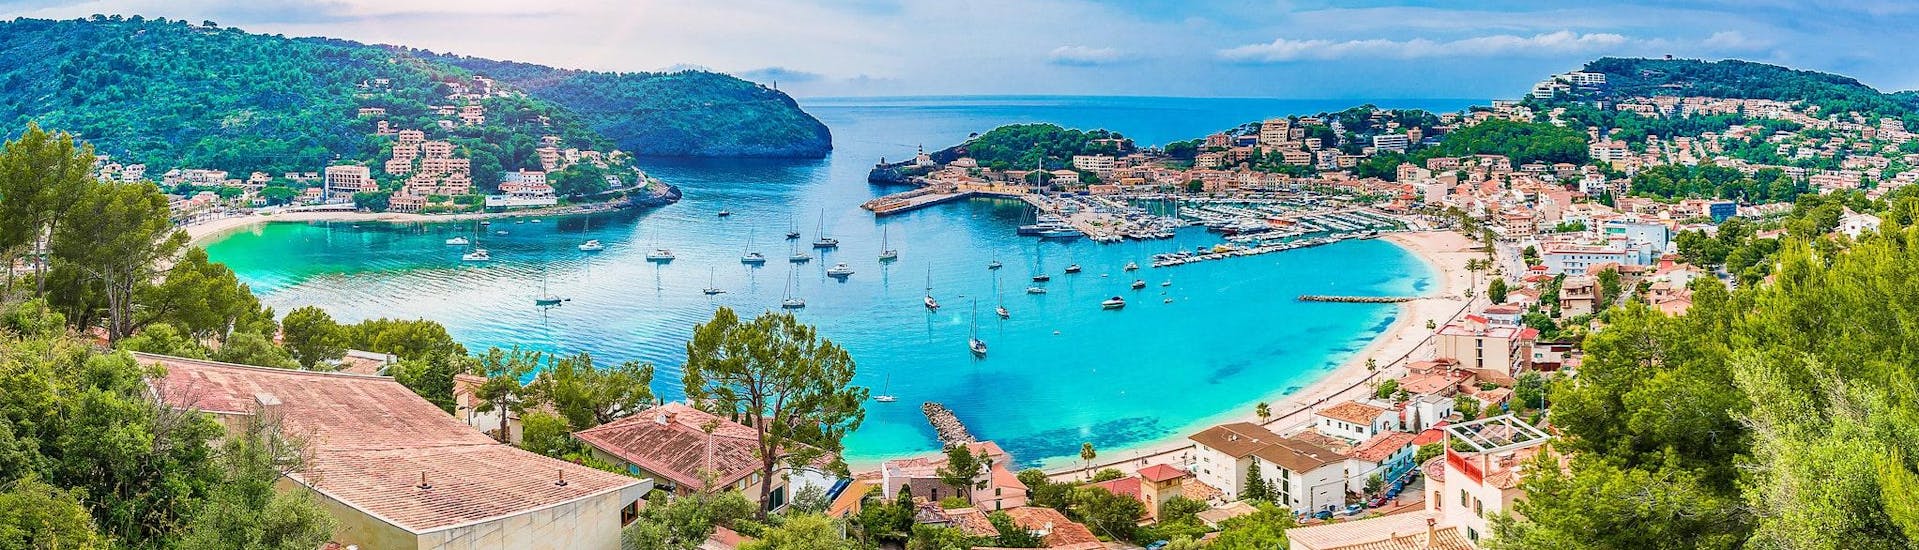 Ein wunderschöner Blick auf Port de Sollér, von wo aus man herrliche Bootstouren entlang der Westküste Mallorcas unternehmen kann.